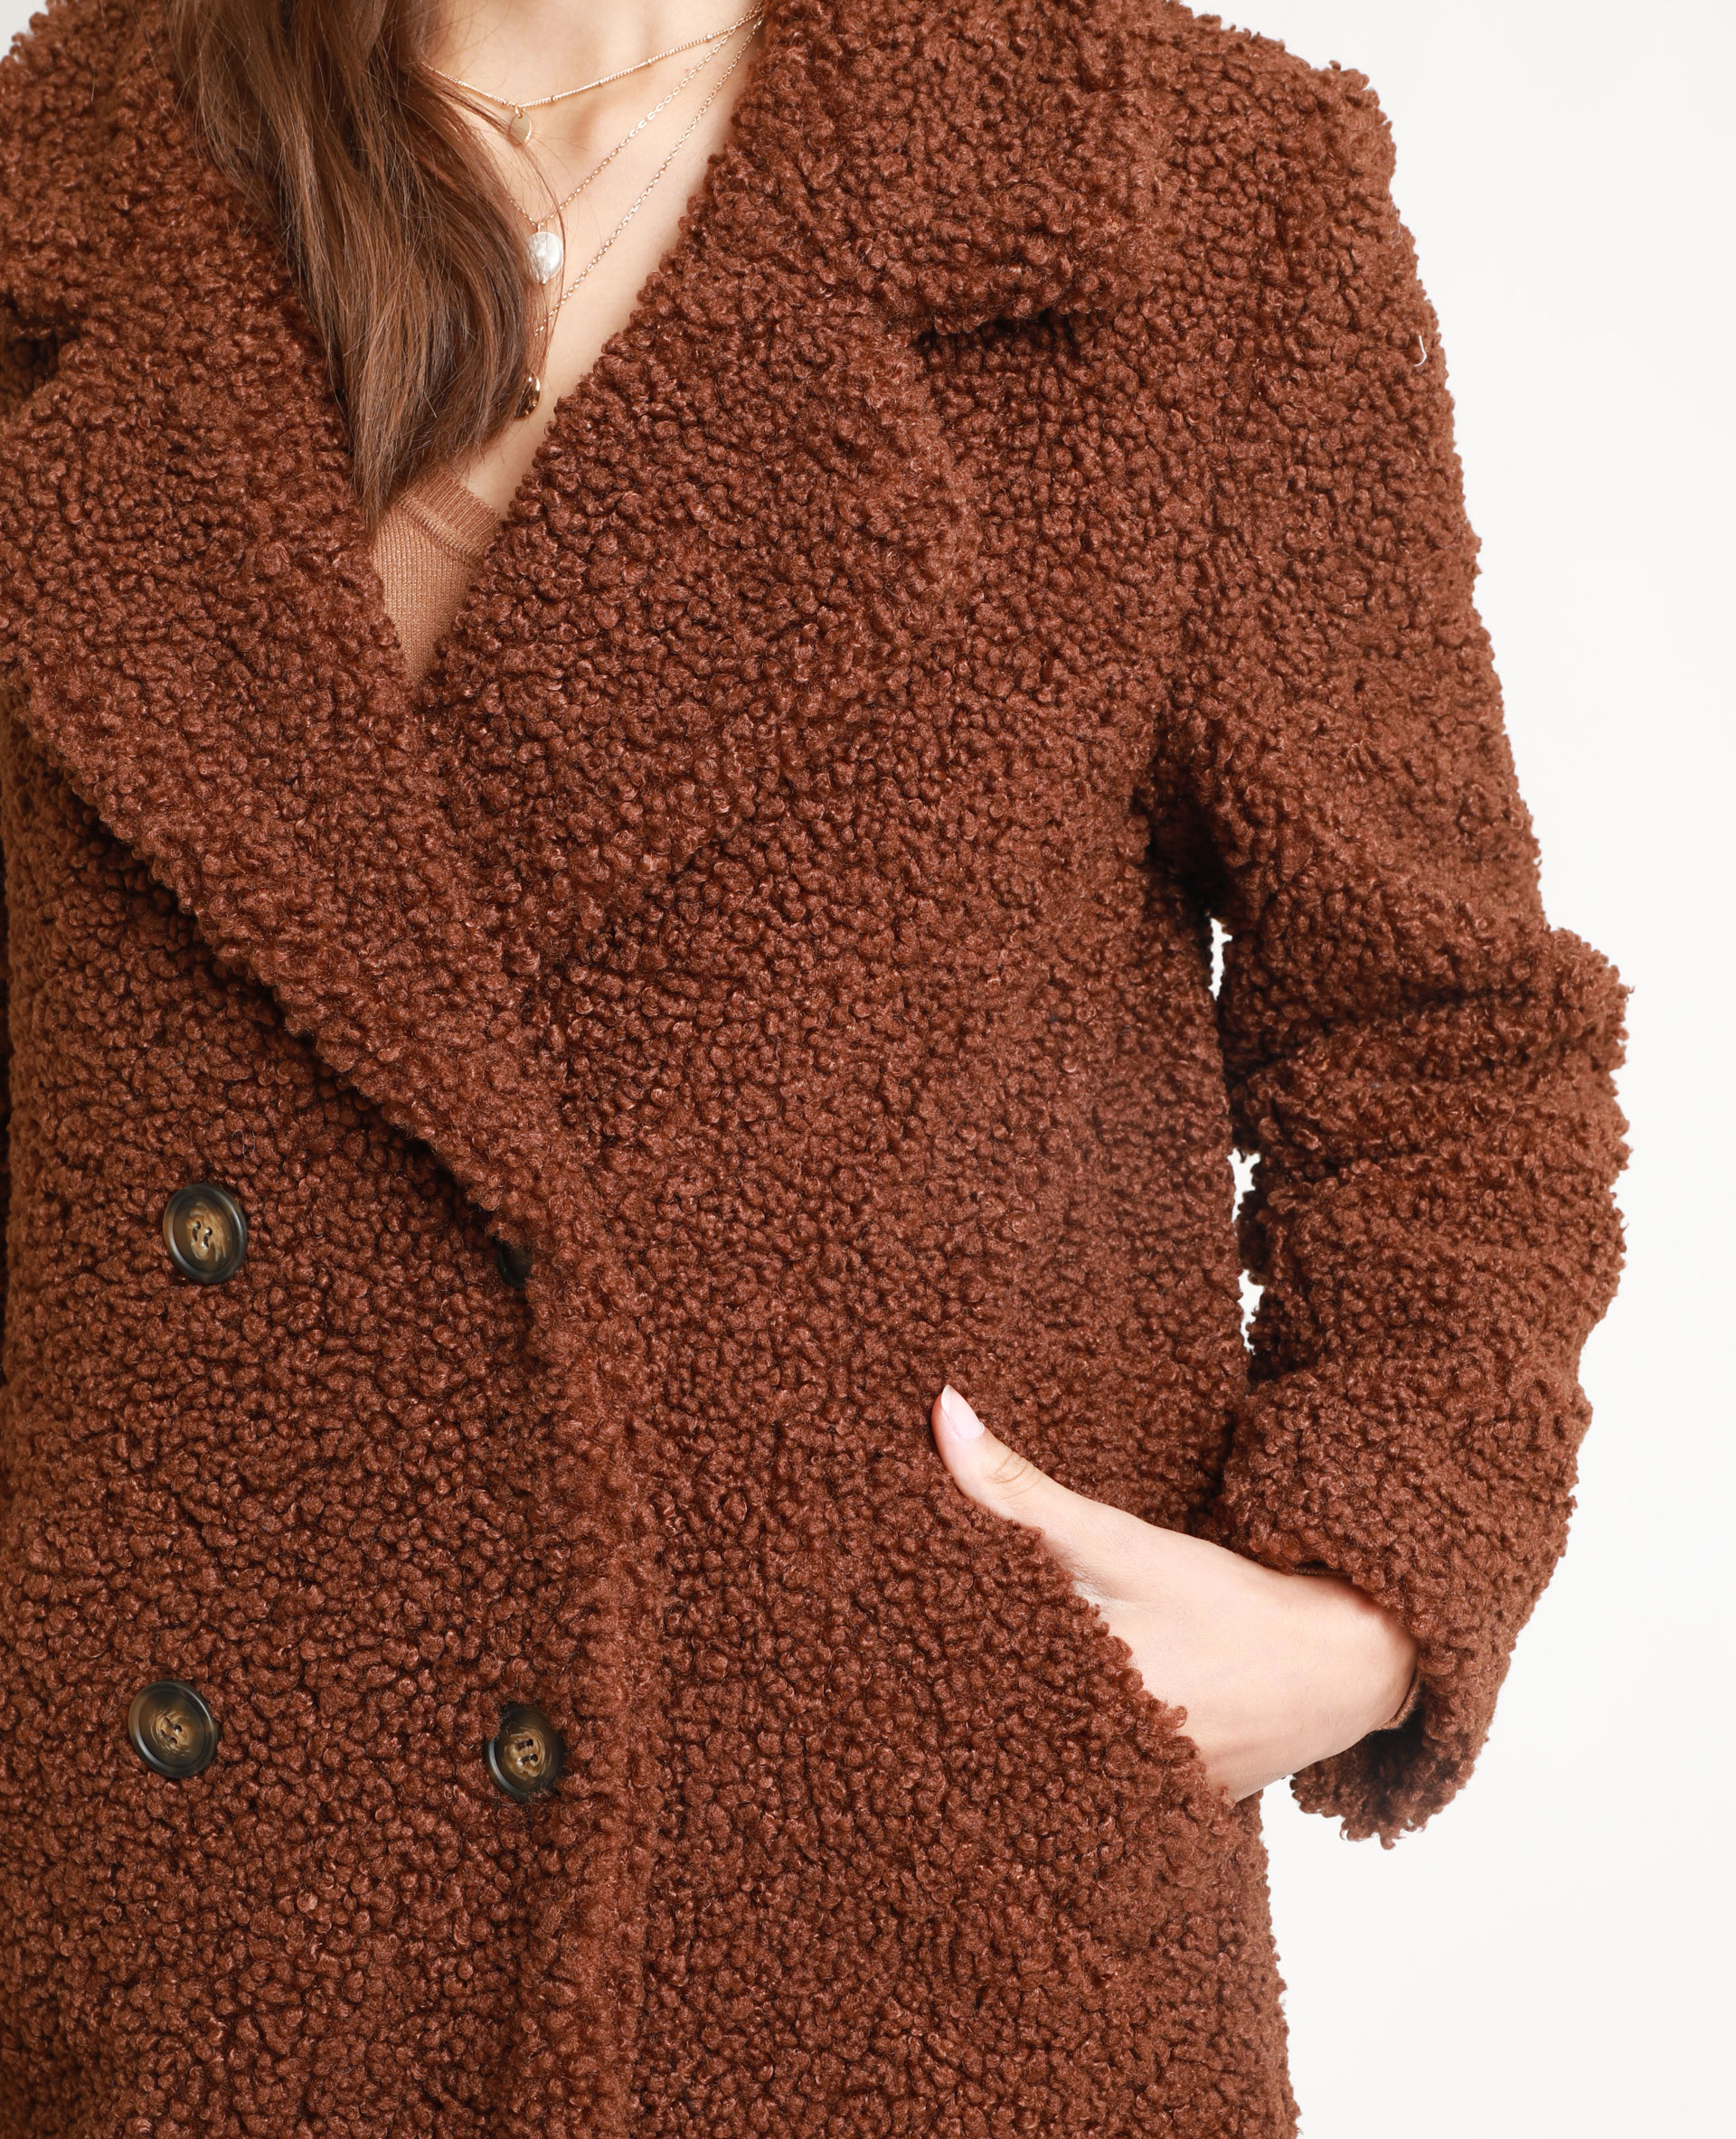 manteau style mouton femme